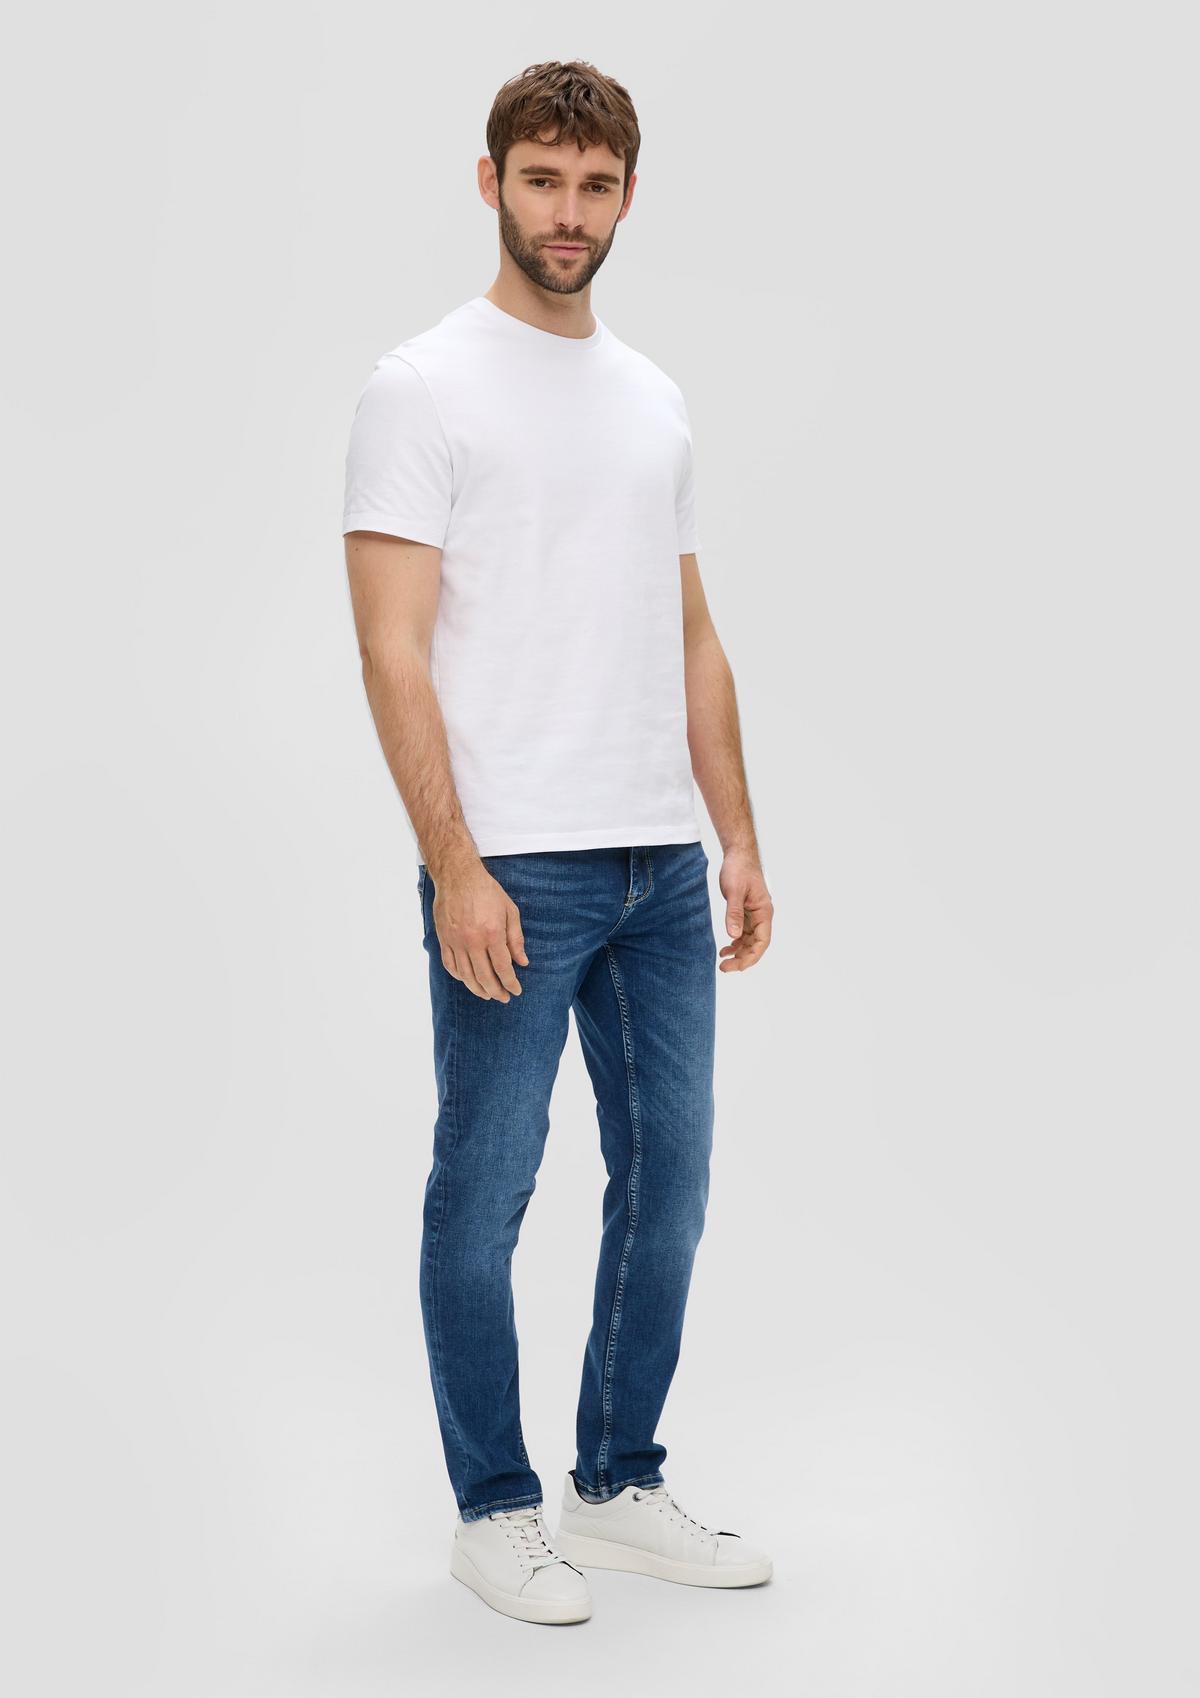 Nelio jeans / slim fit / mid rise / slim leg